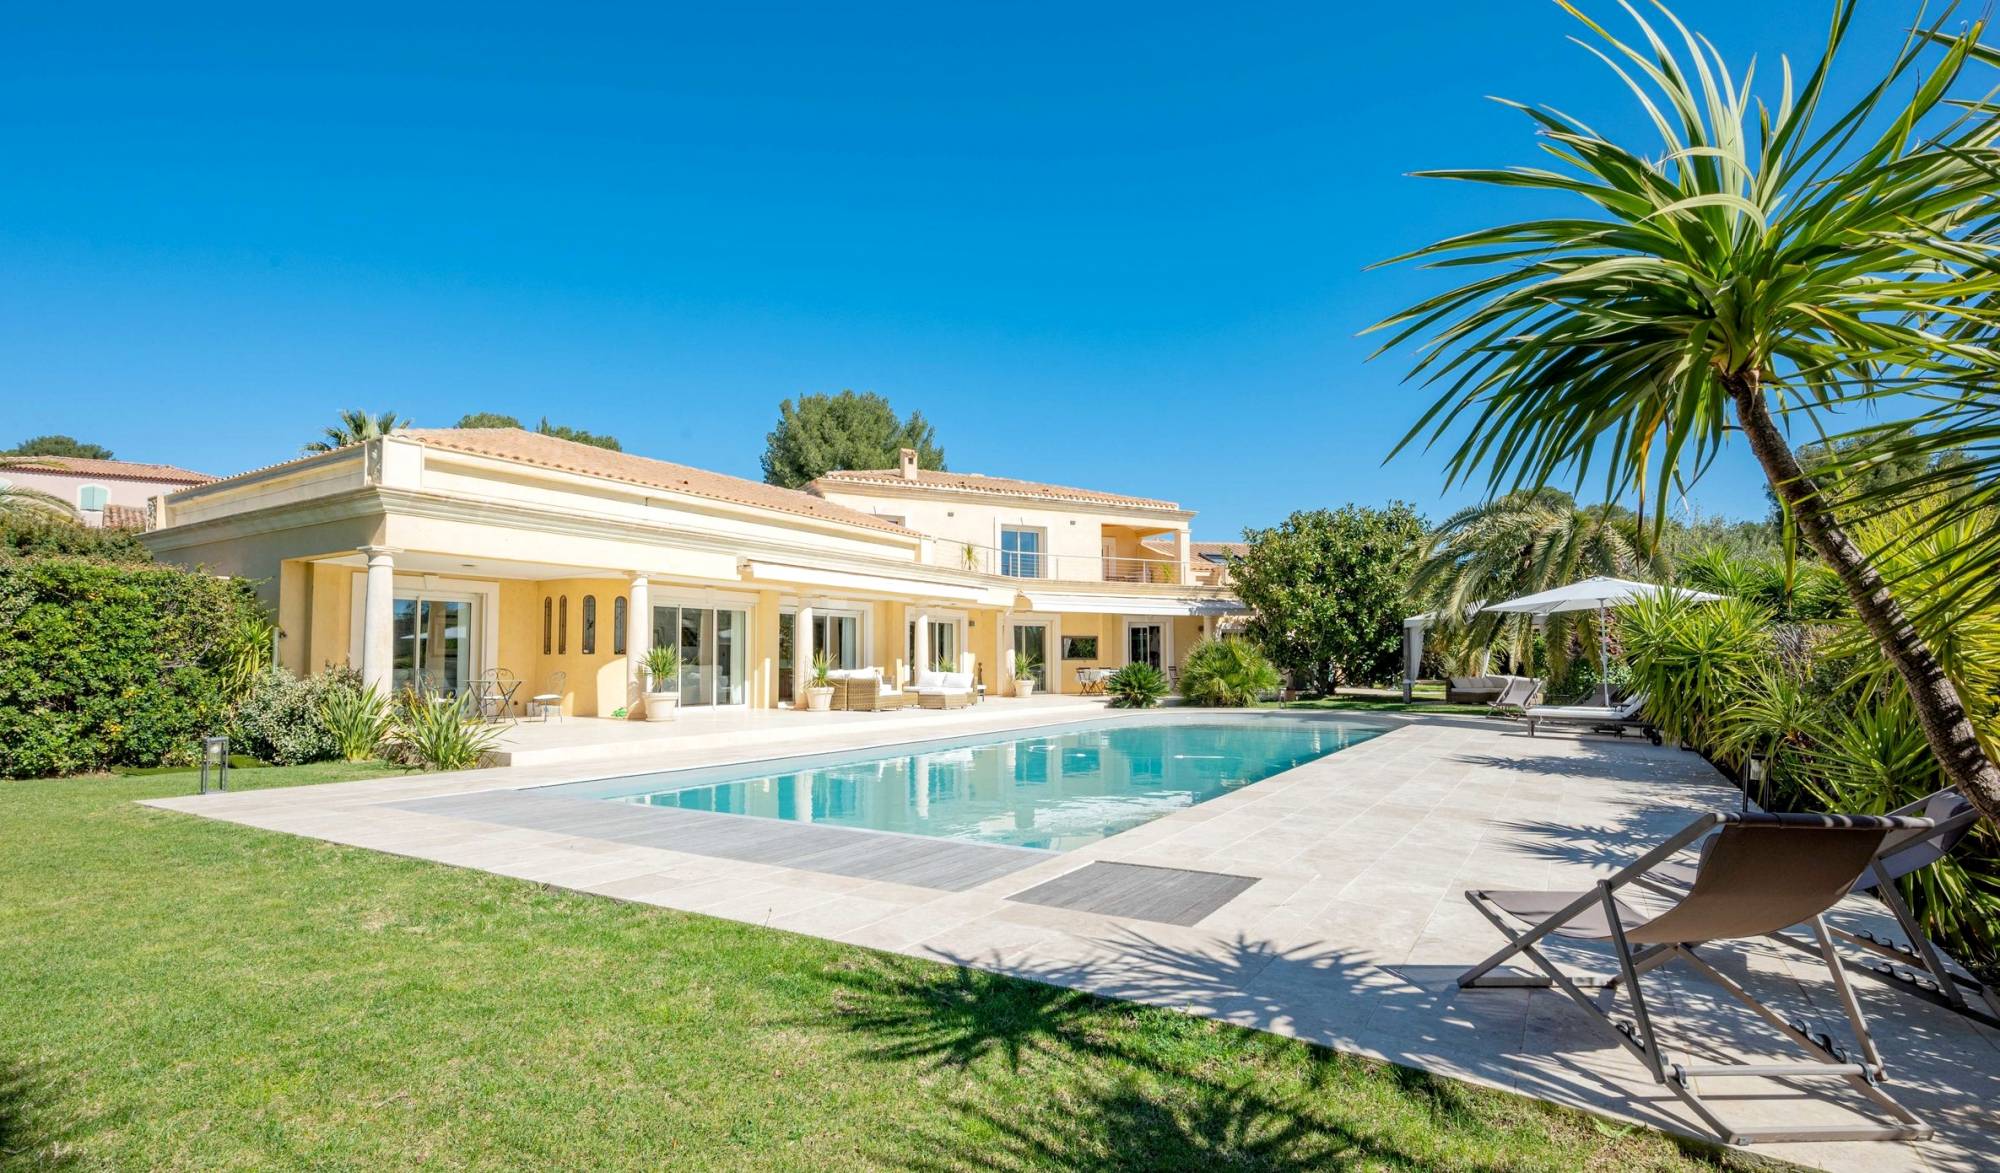 Propriété de prestige avec piscine et jardin luxuriant à vendre à Saint-Cyr-sur-Mer